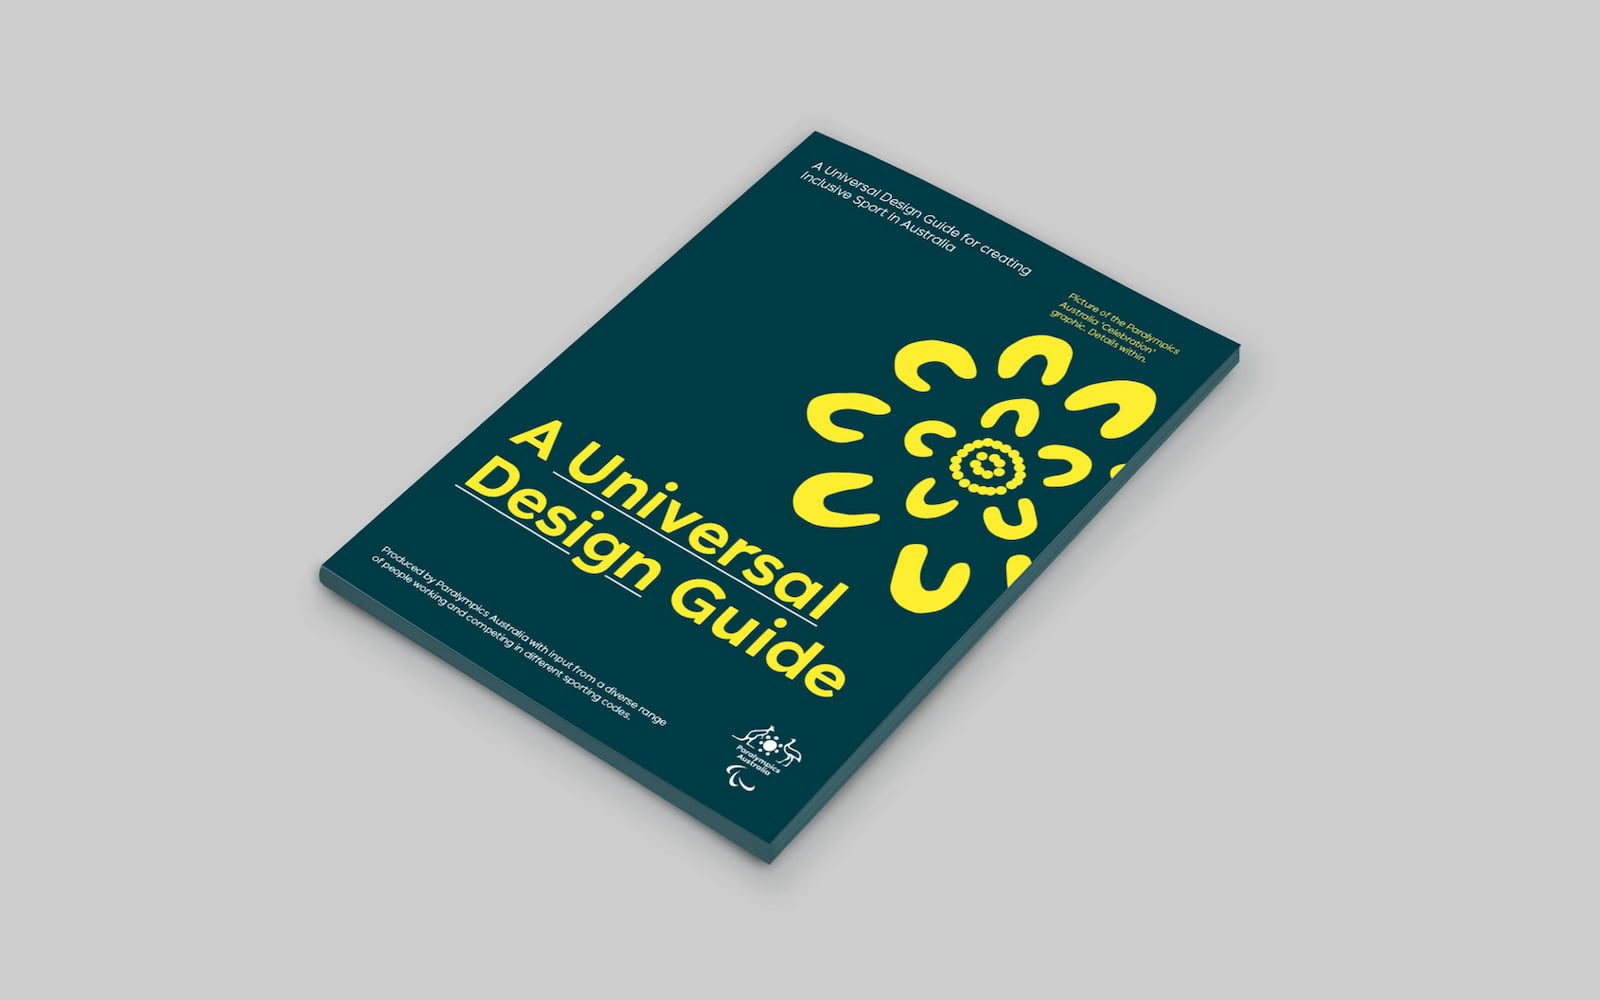 Universal Design Guide